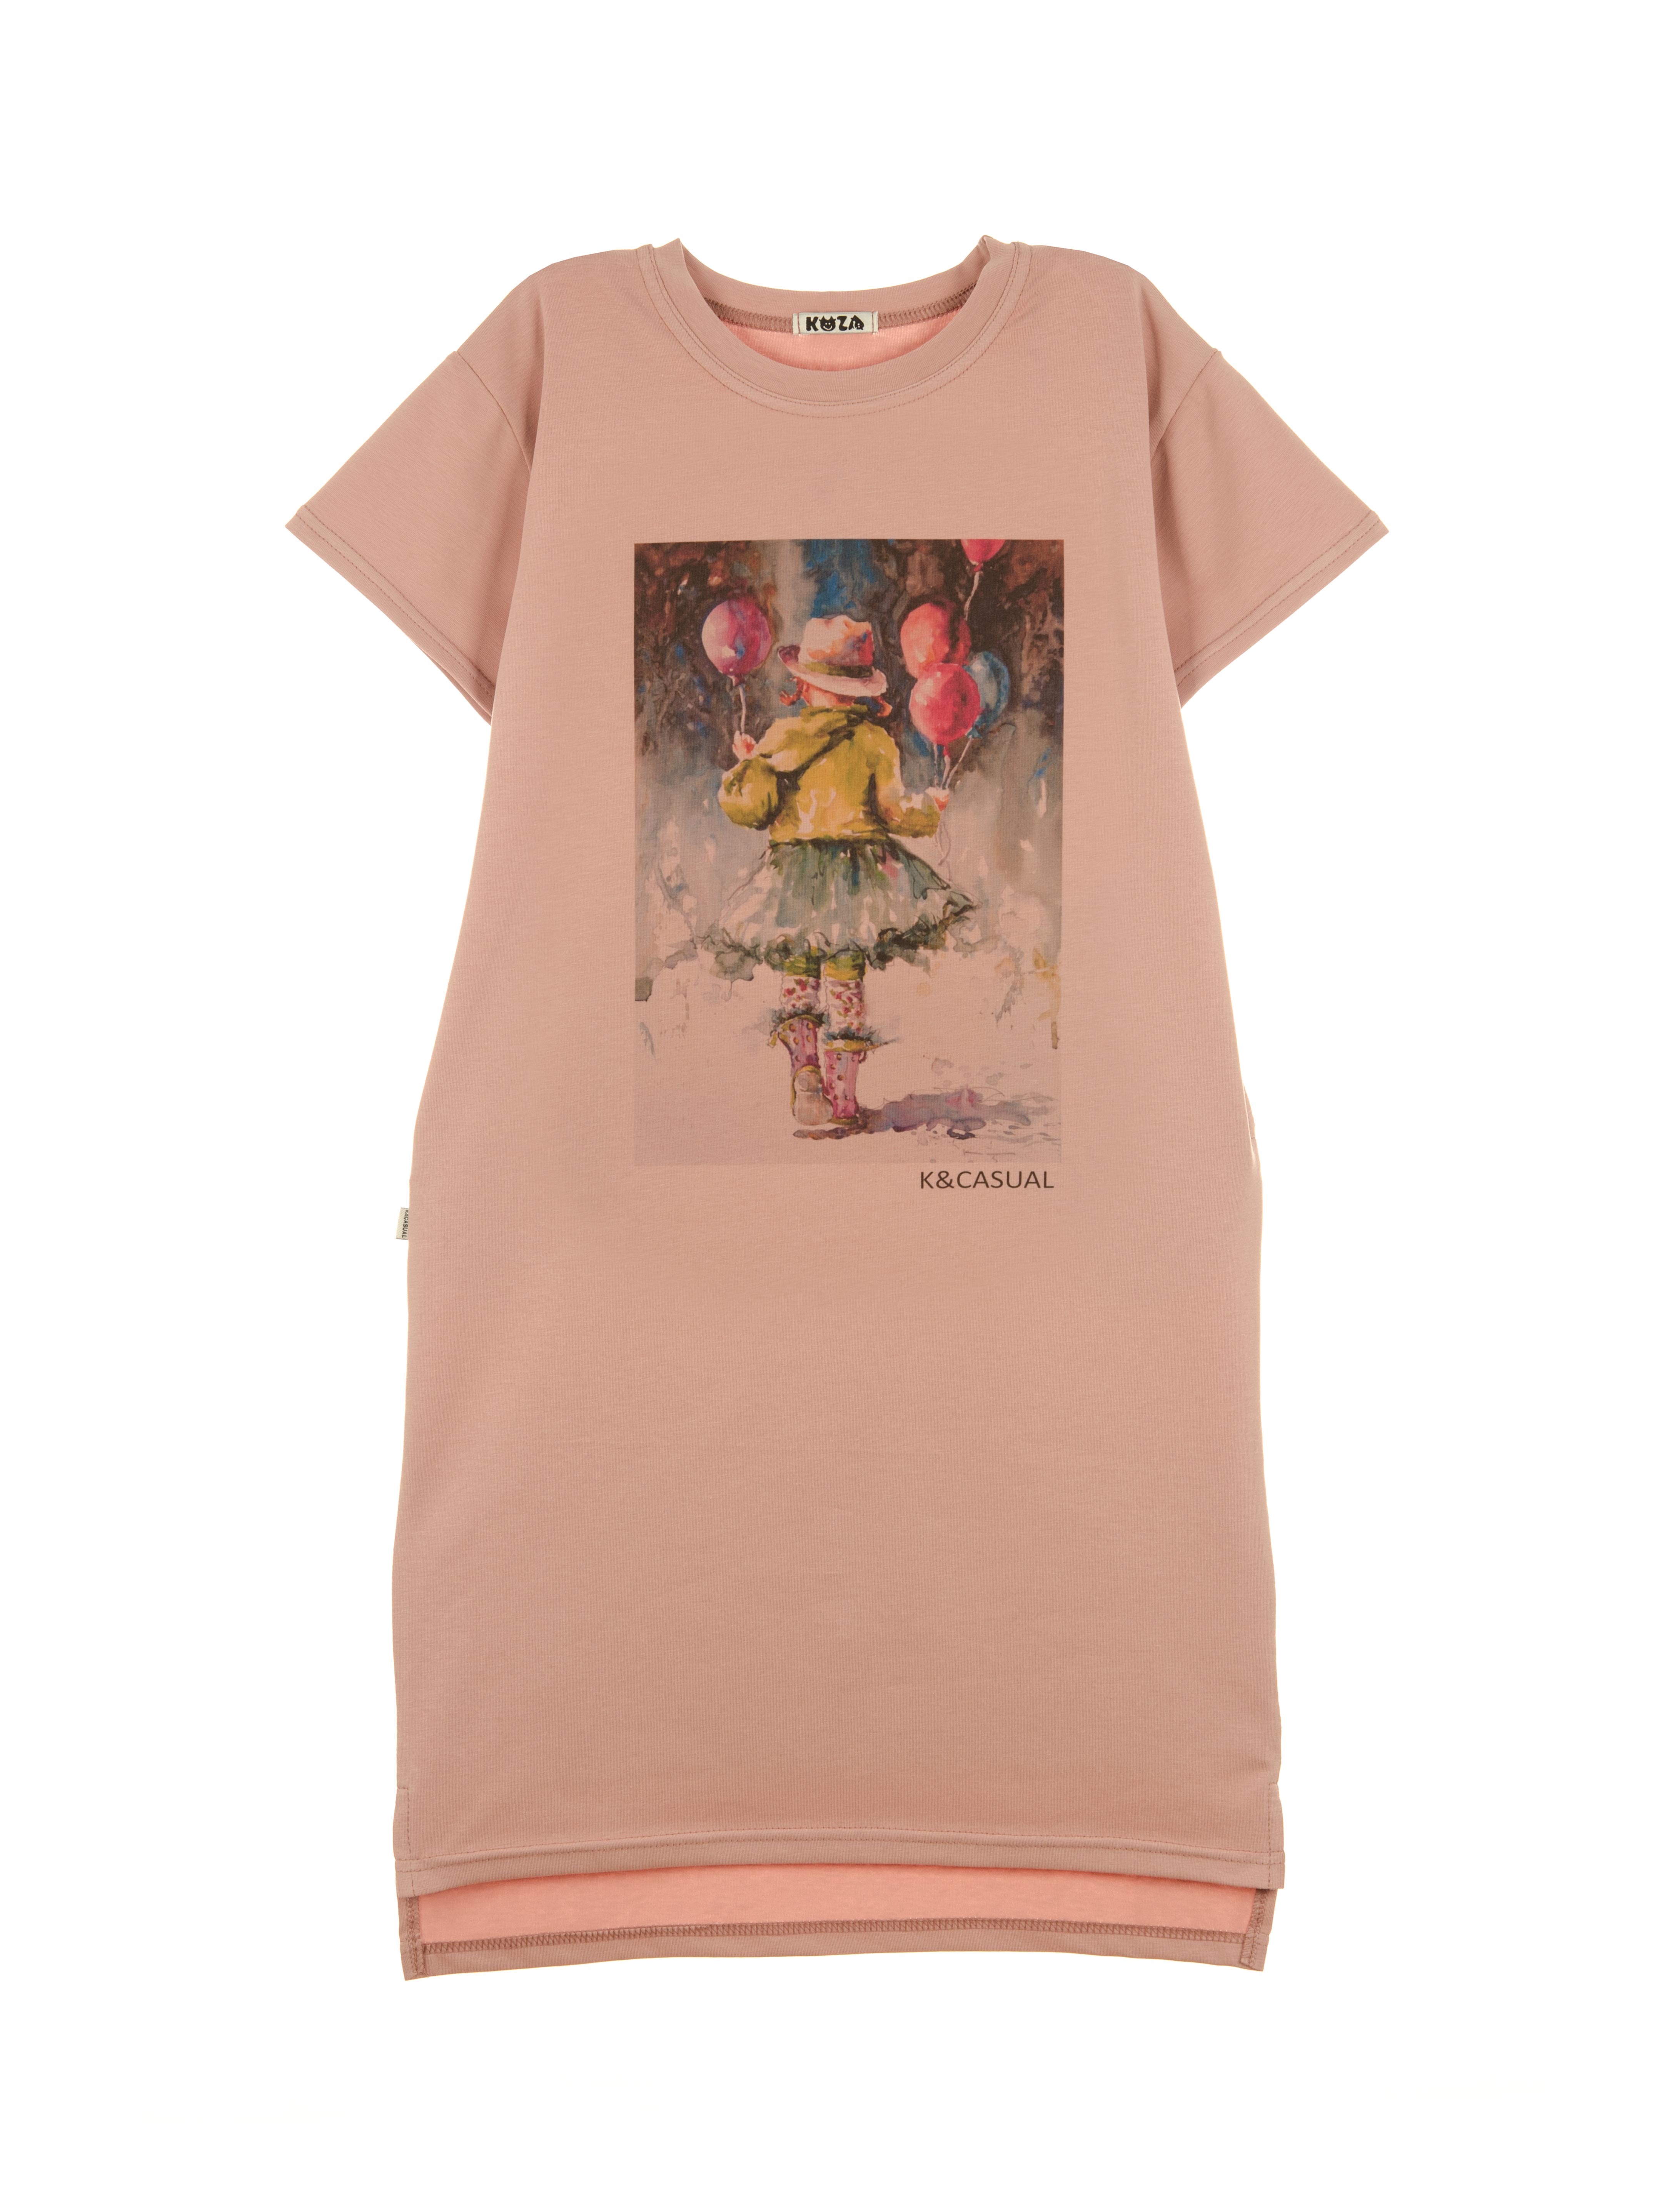 Платье 1177А6 розовая дымка